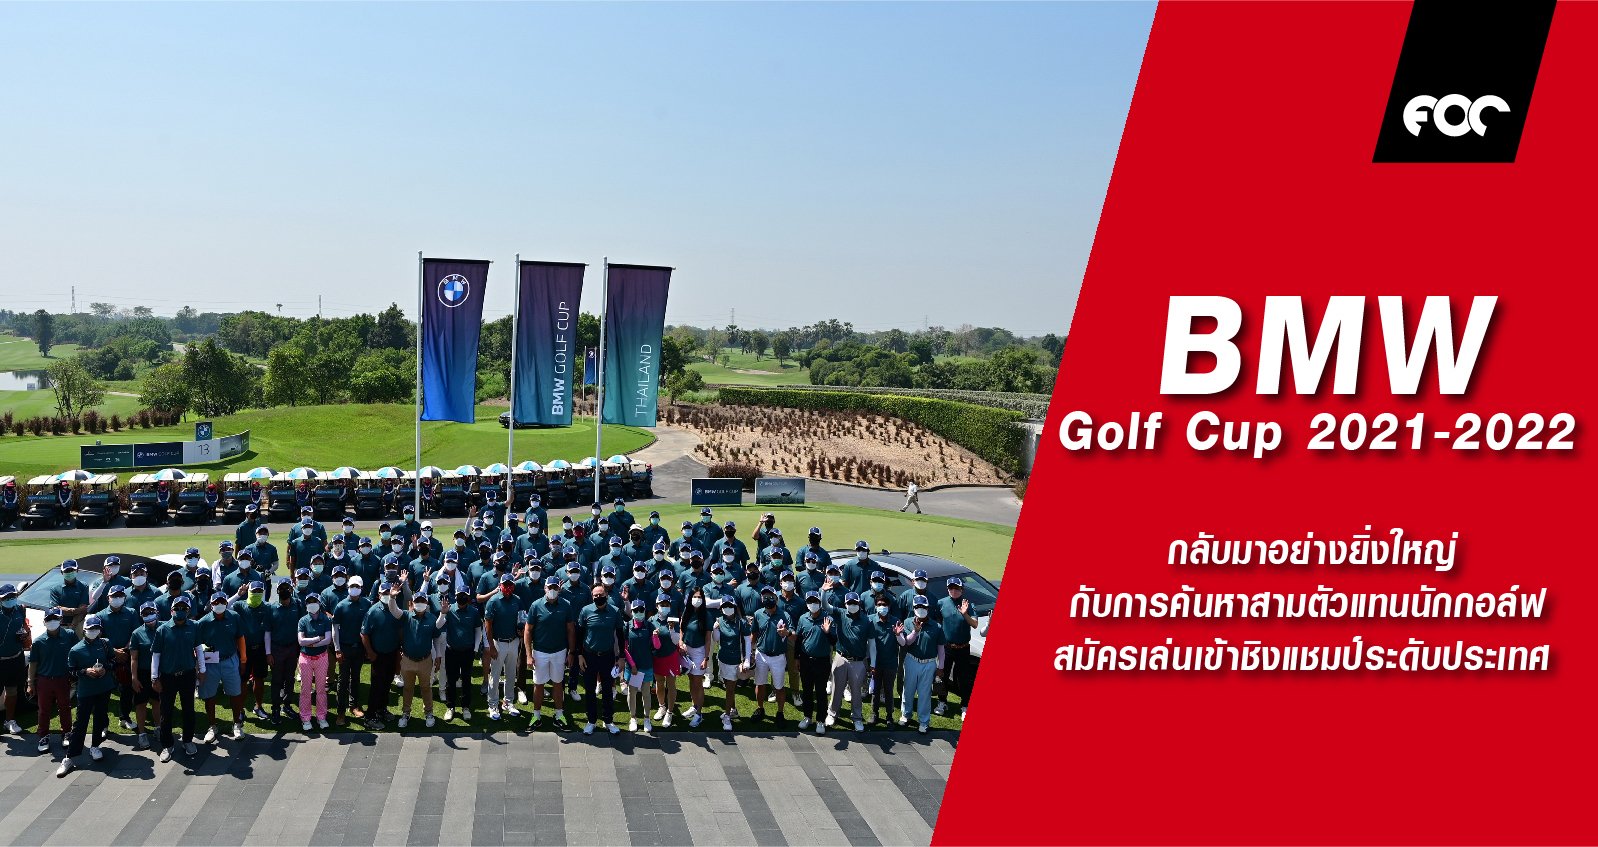 บีเอ็มดับเบิลยู ประเทศไทย กลับมาอย่างยิ่งใหญ่กับการค้นหาสามตัวแทนนักกอล์ฟสมัครเล่นเข้าชิงแชมป์ระดับประเทศ ในรายการ BMW Golf Cup 2021-2022 รอบคัดเลือก